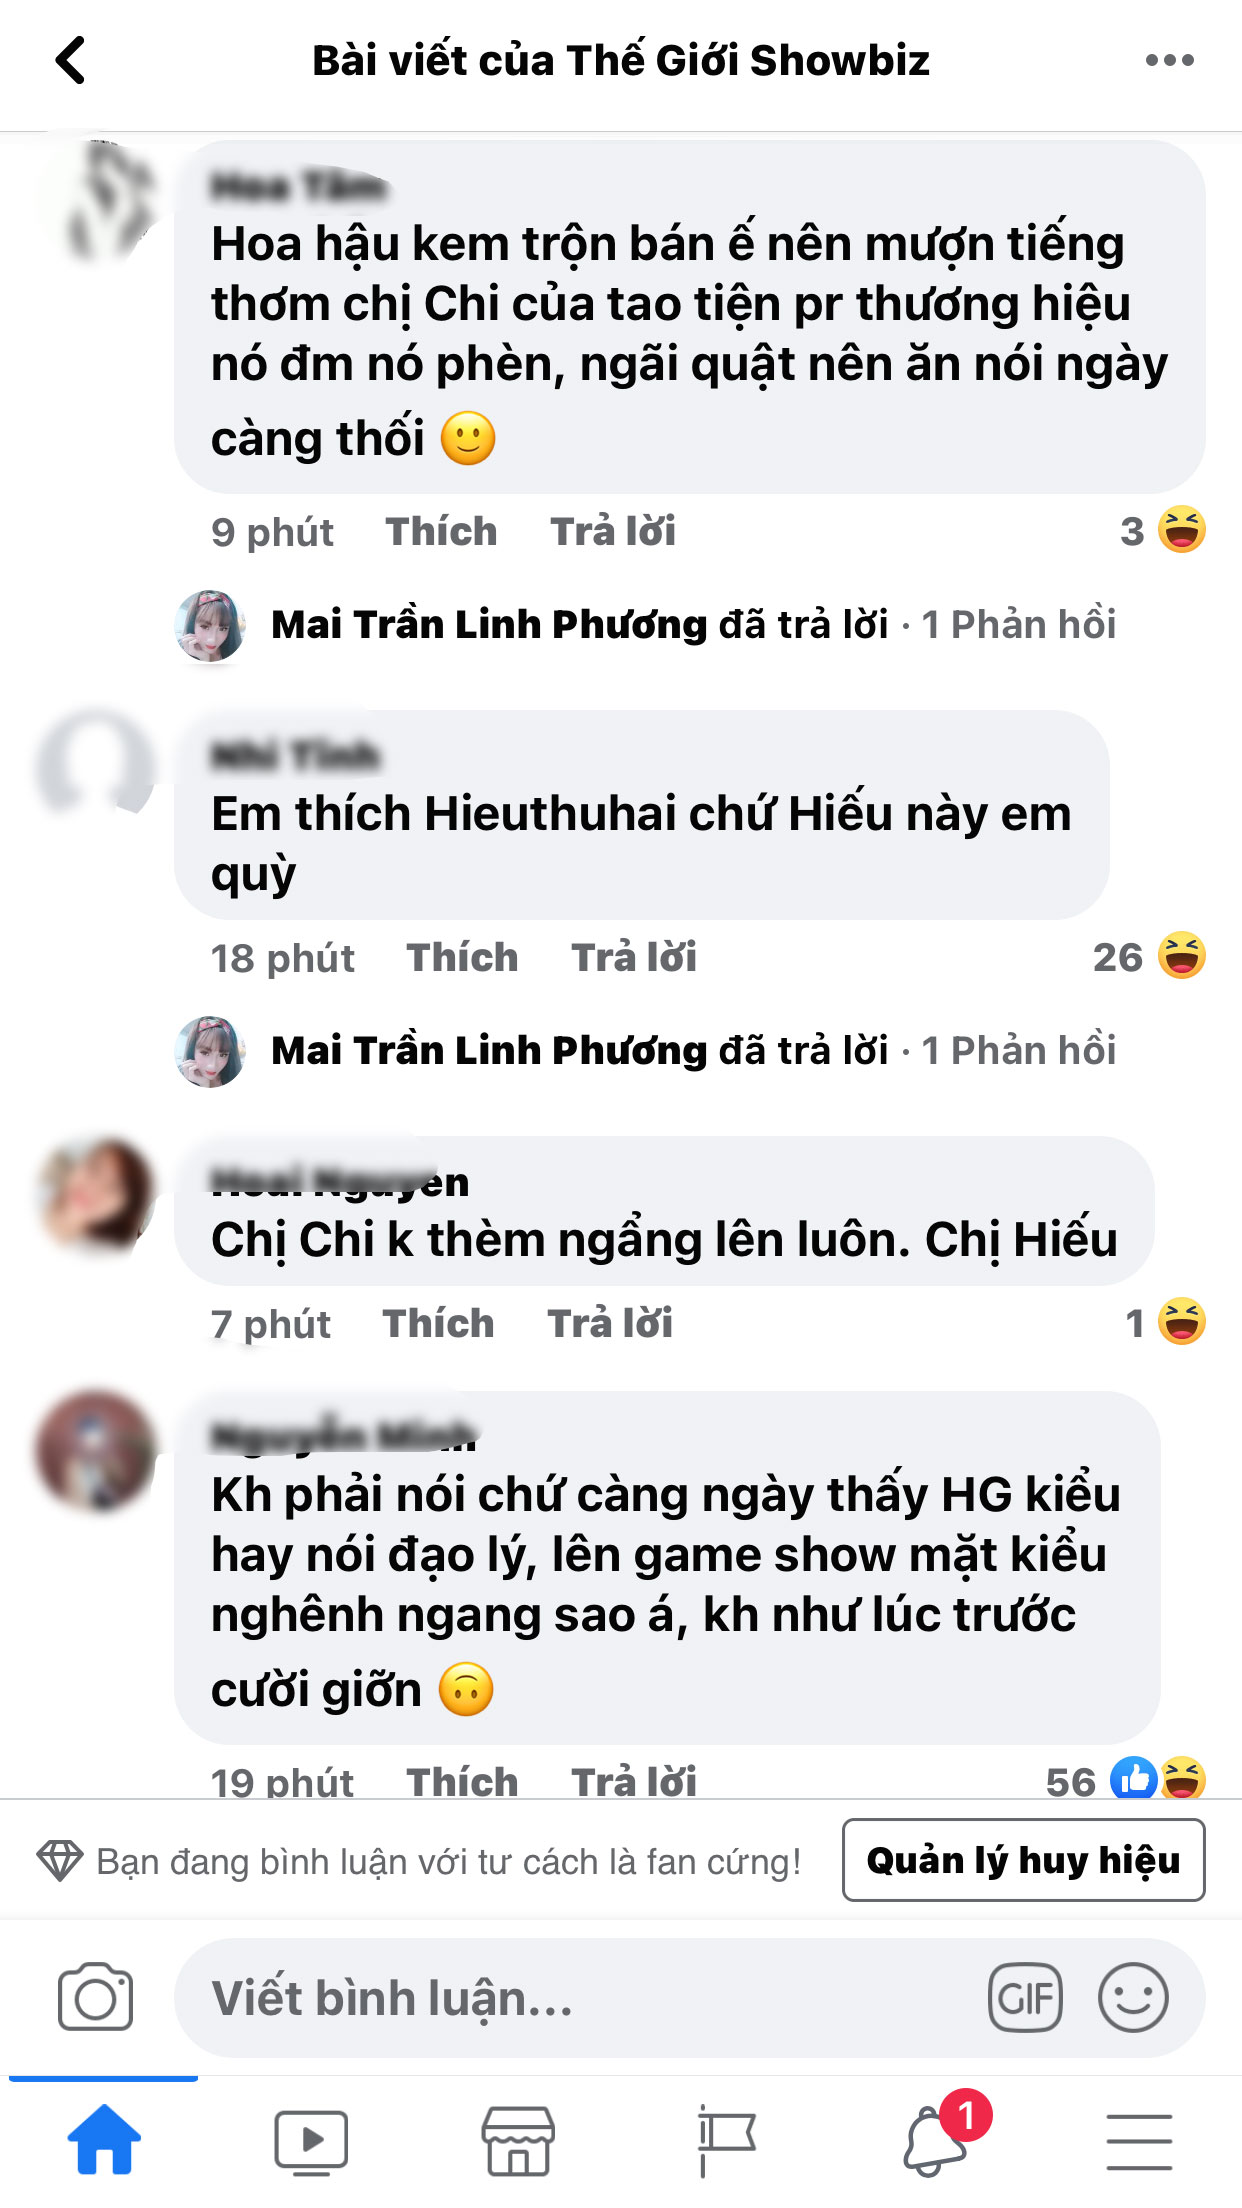 Huong-giang-bat-ngo-bi-cdm-chi-trich-gay-gat-khi-co-hanh-dong-thieu-te-nhi-voi-lam-khanh-chi-5